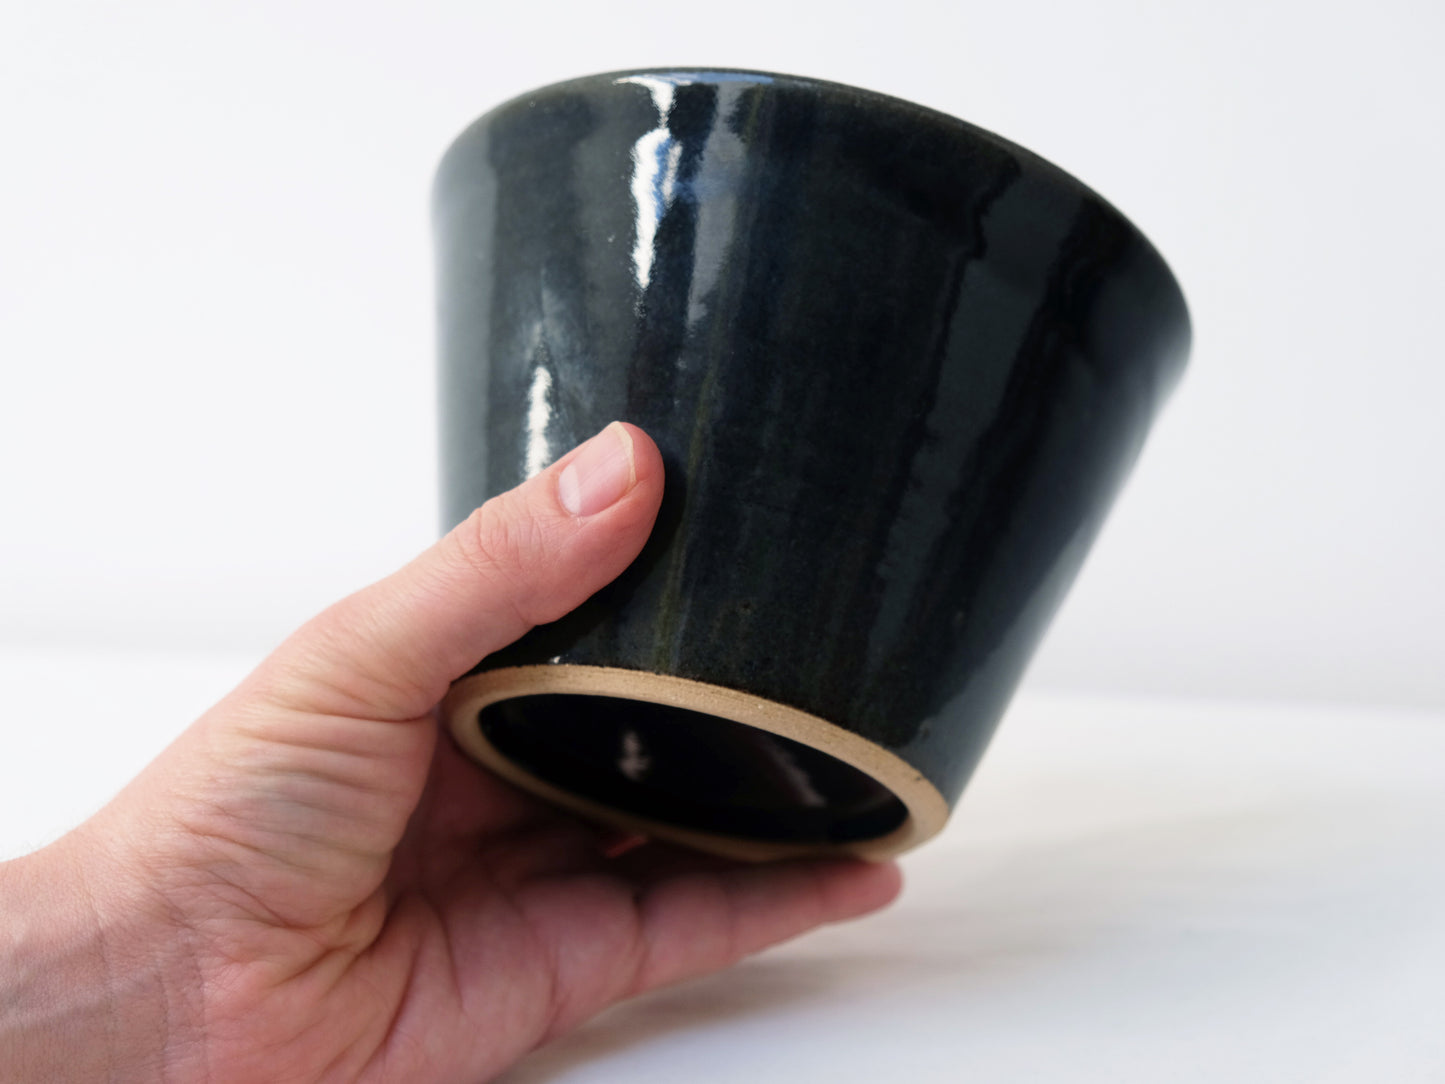 
                  
                    Large Indigo Glaze Bowls by Shussai-gama
                  
                